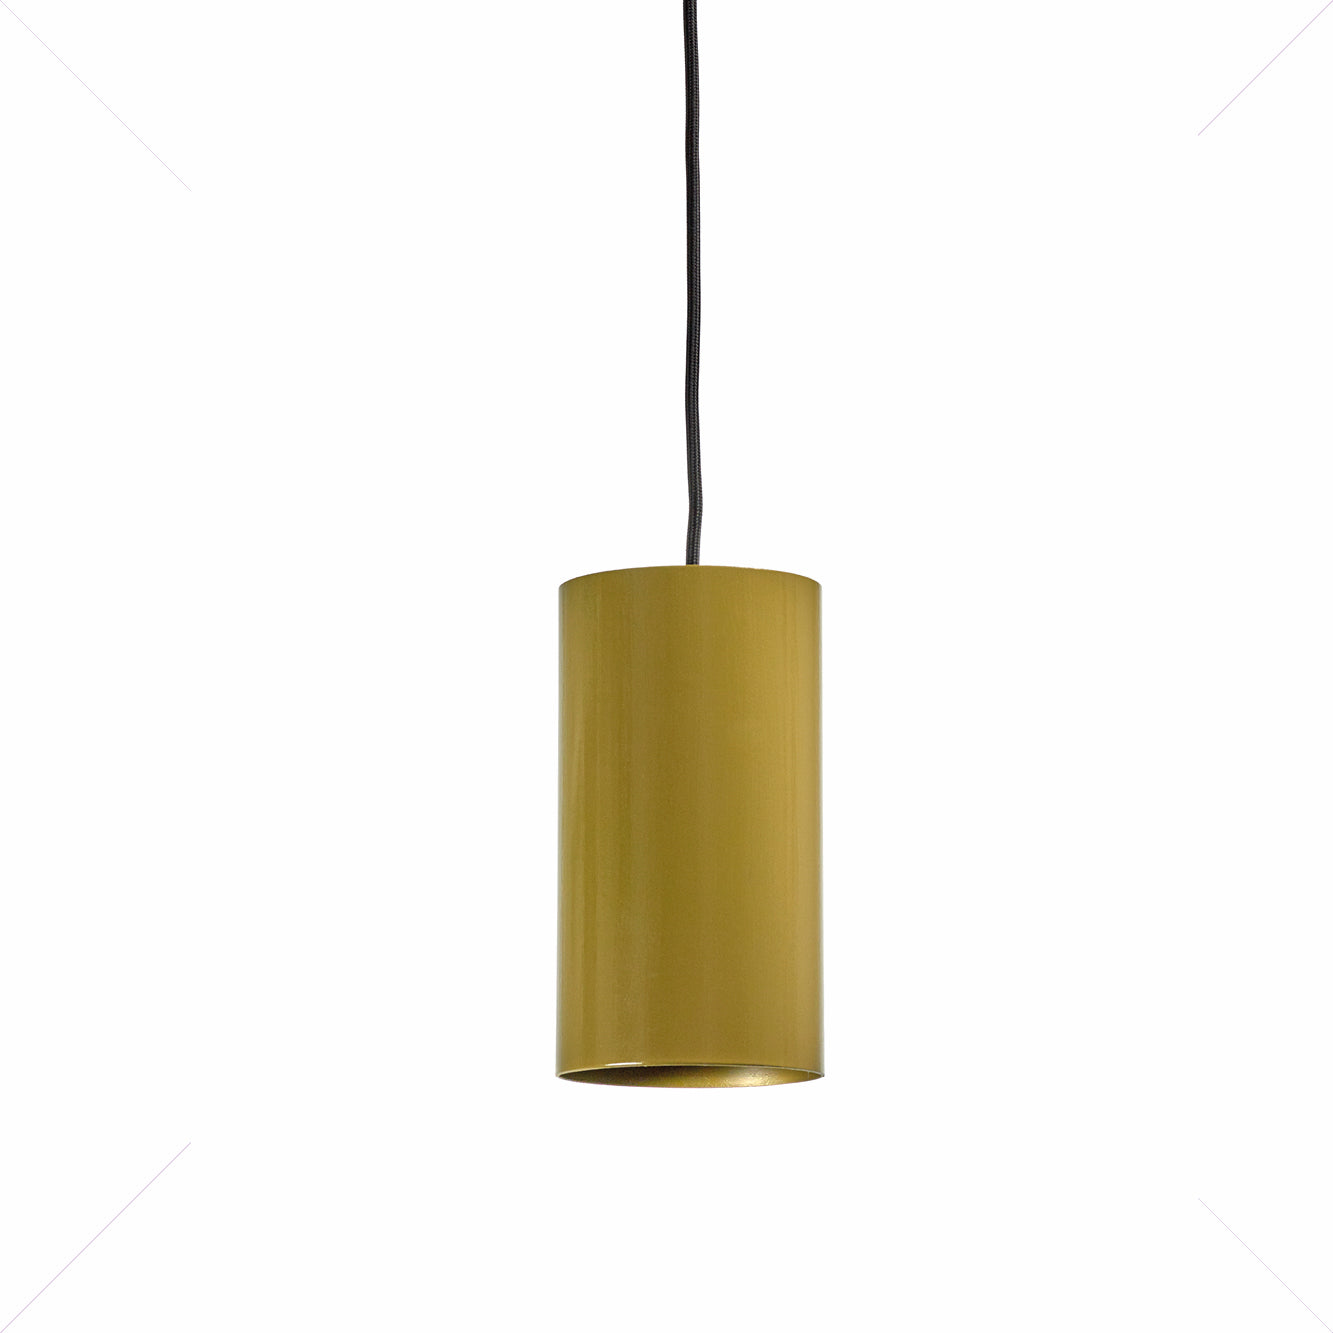 Tube Lamp